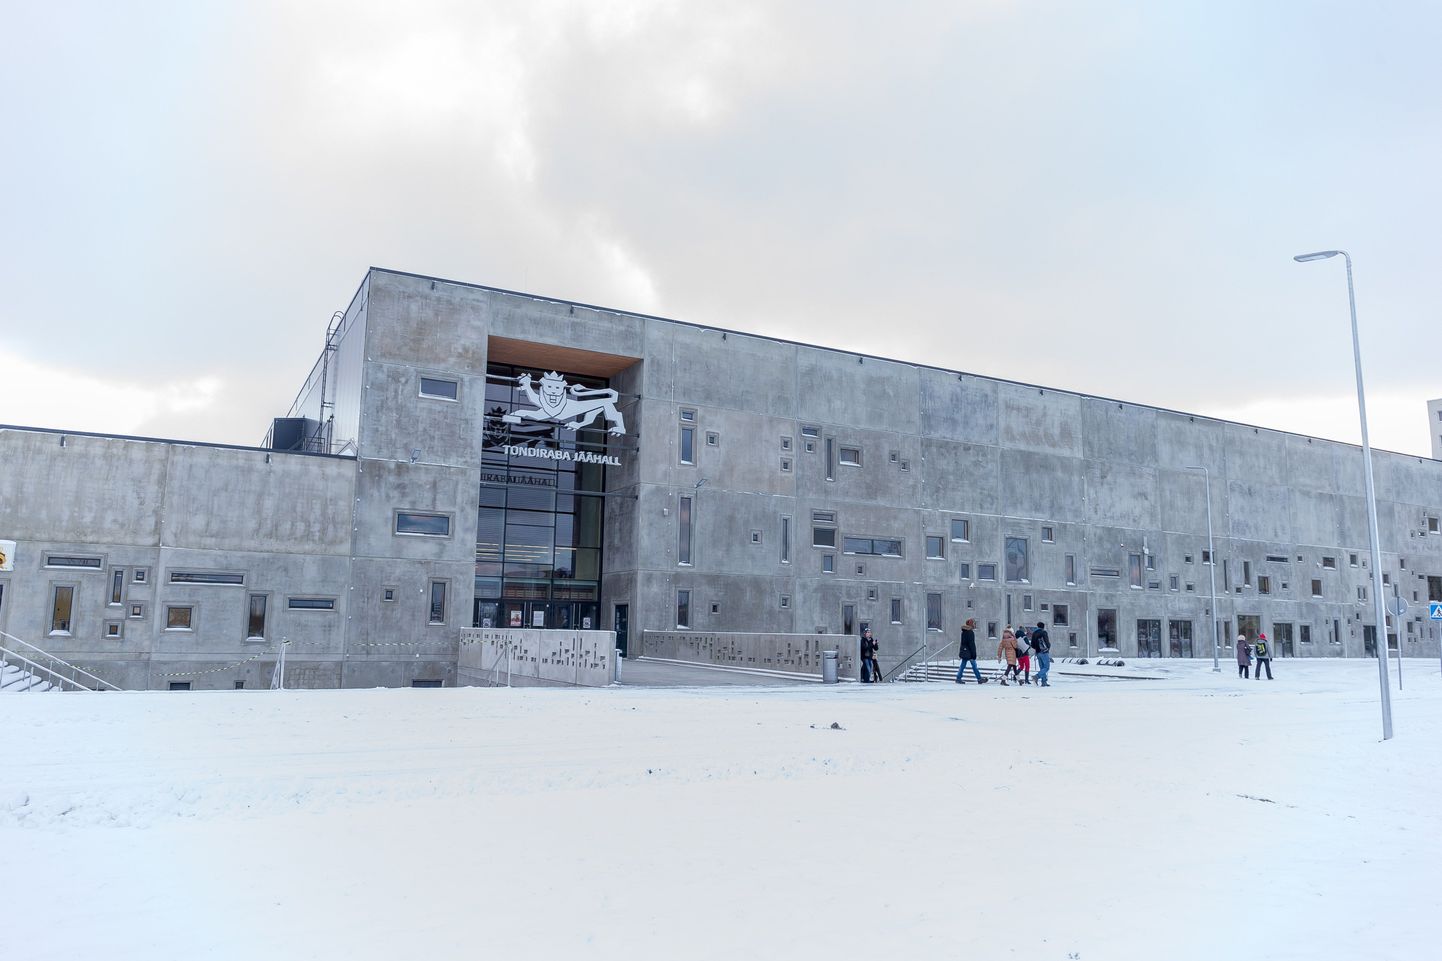 Ледовый холл "Тондираба".